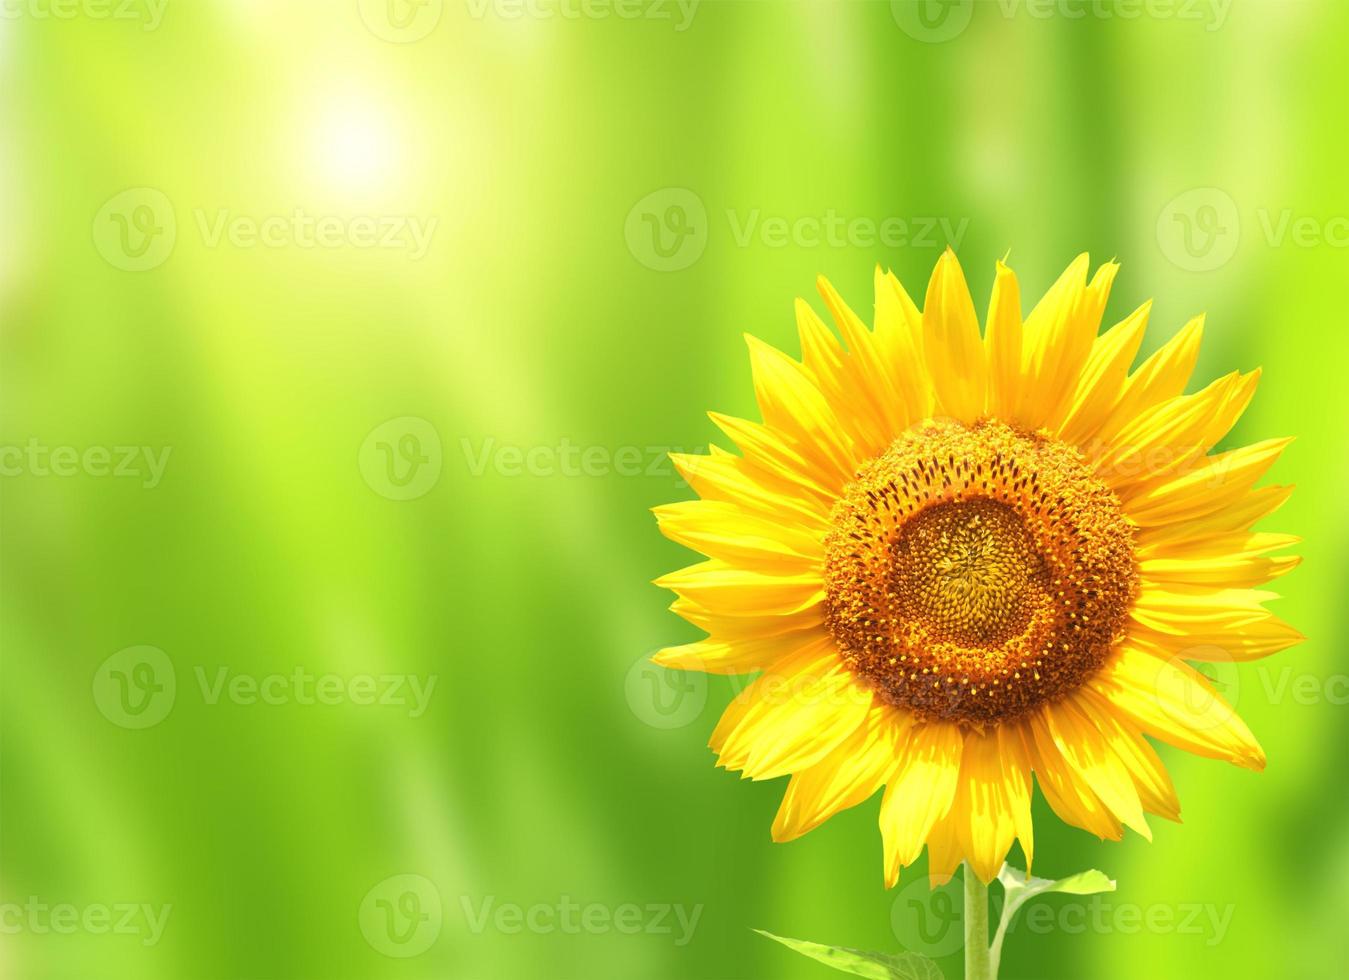 leuchtend gelbe Sonnenblume auf grünem Hintergrund foto